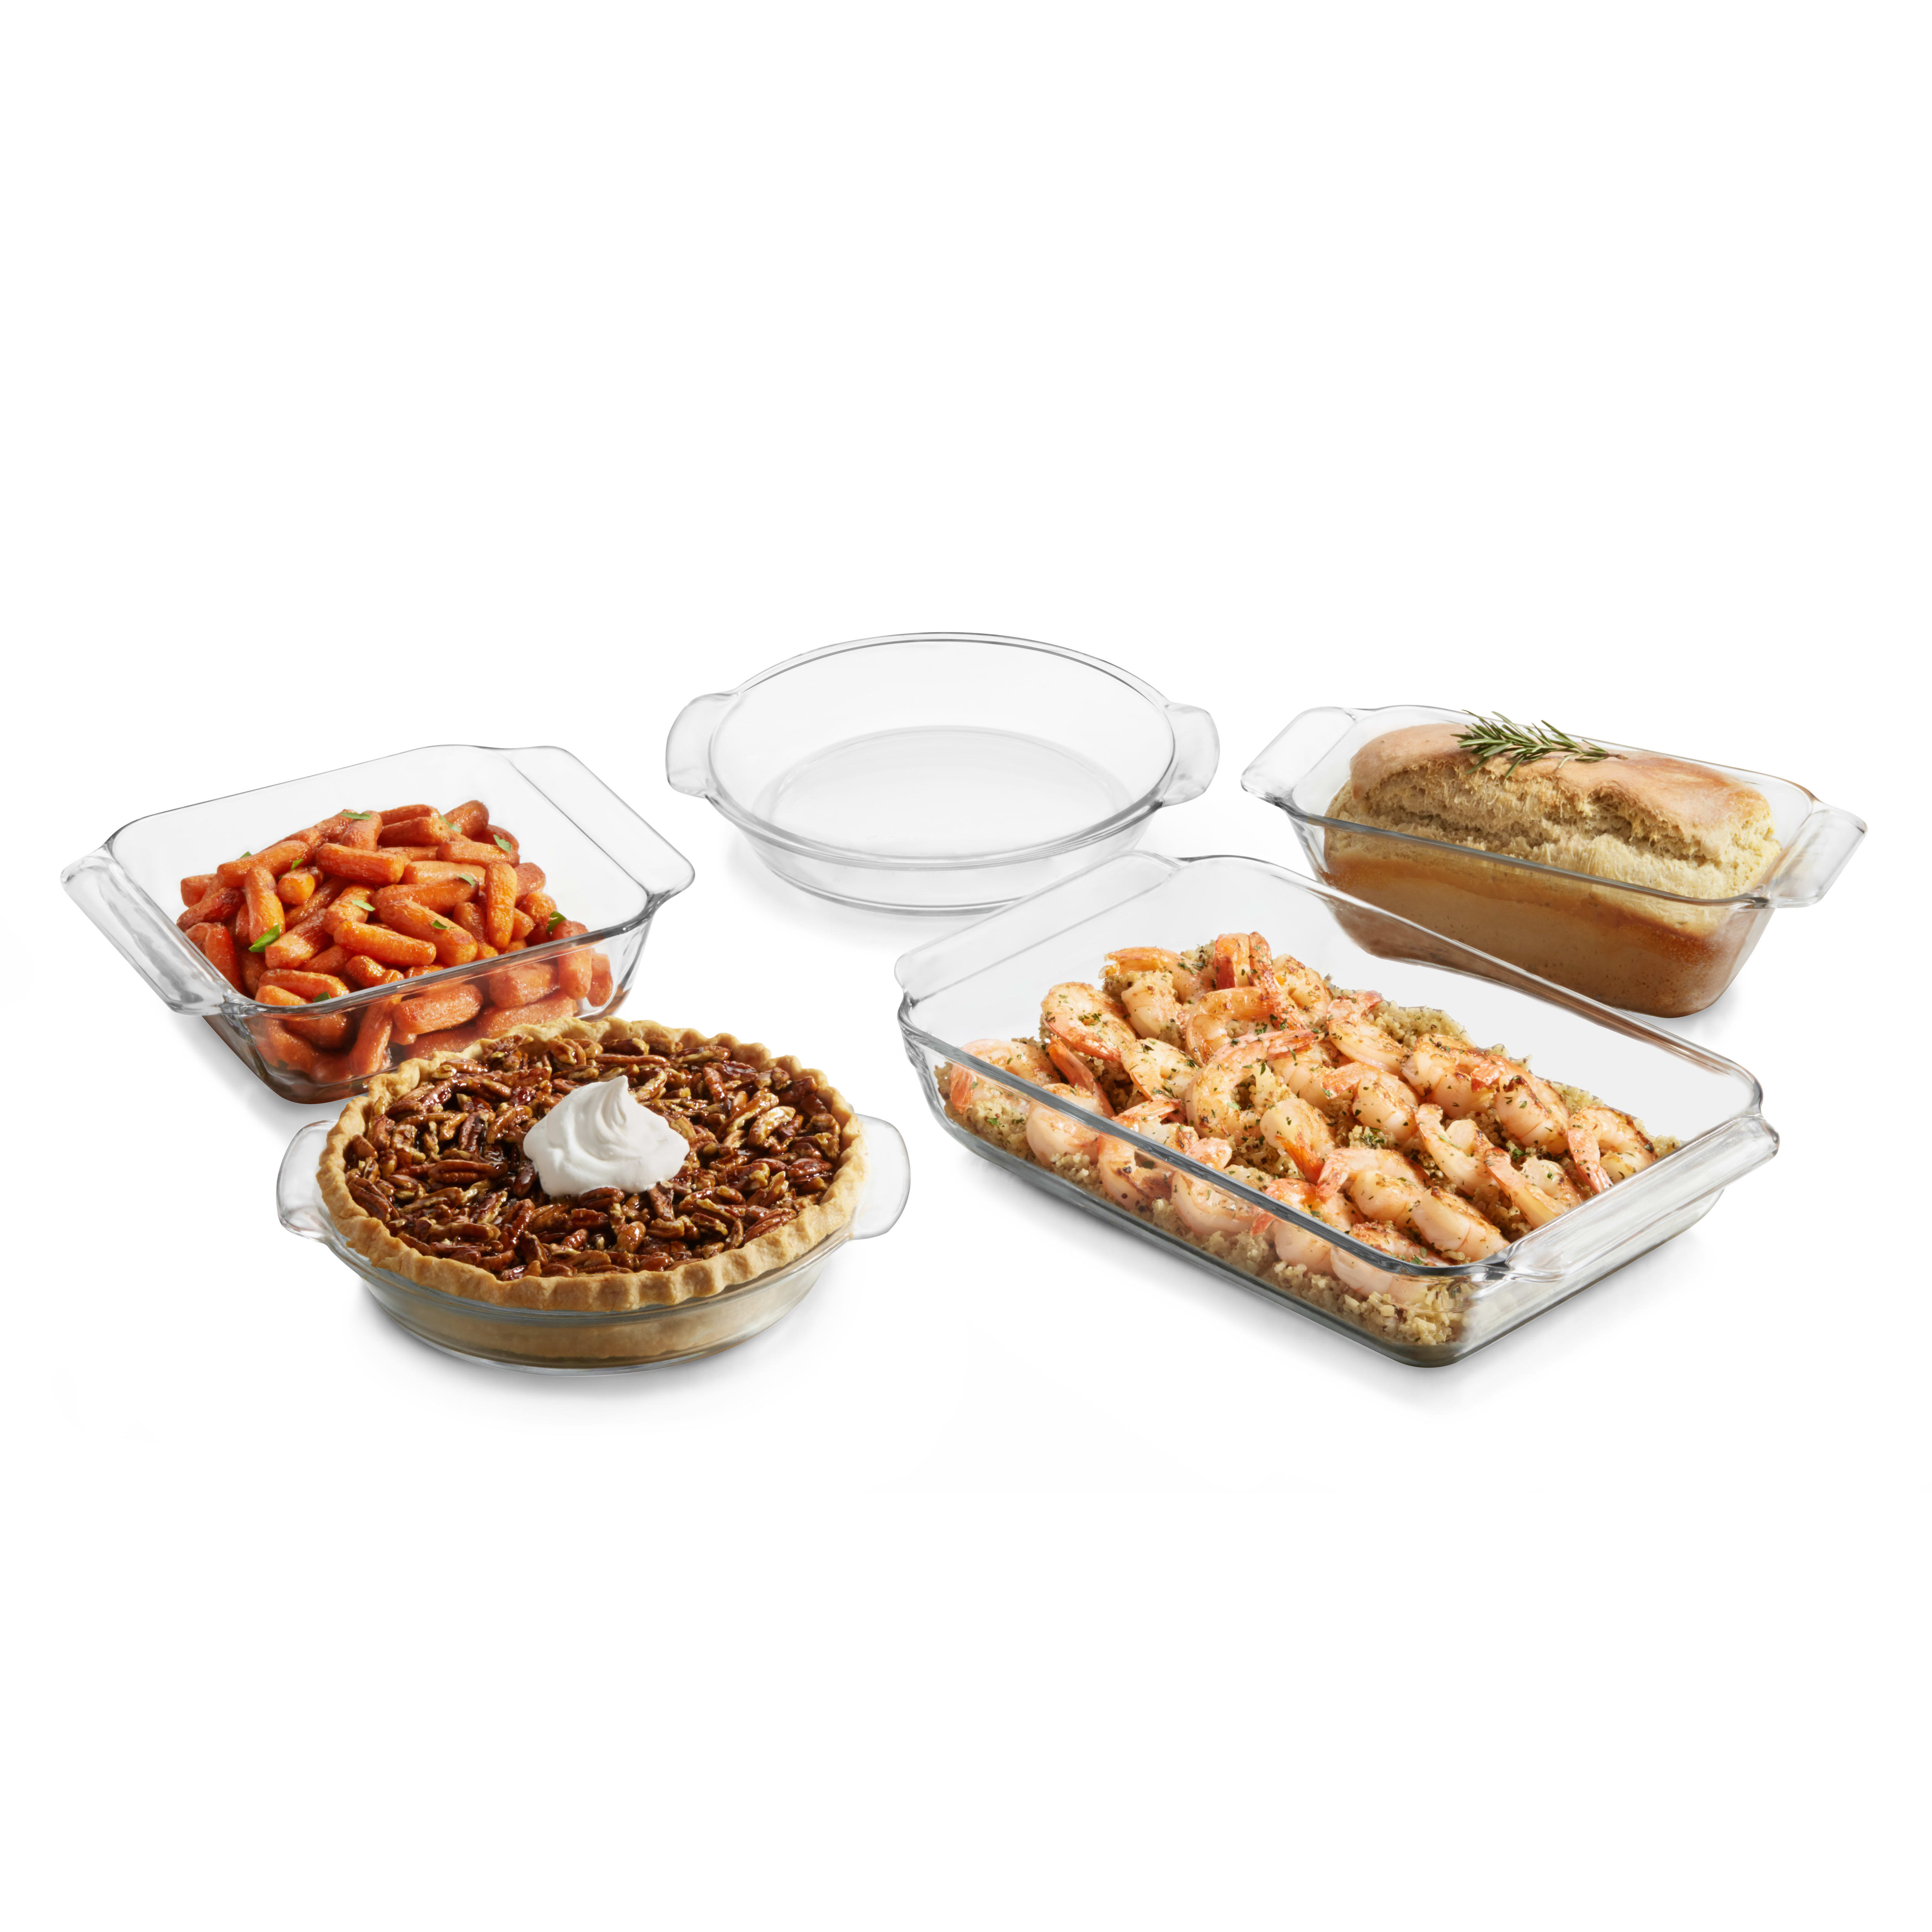 https://assets.wfcdn.com/im/28559364/compr-r85/2519/251988362/libbey-bakers-premium-5-piece-glass-casserole-baking-dish-set.jpg